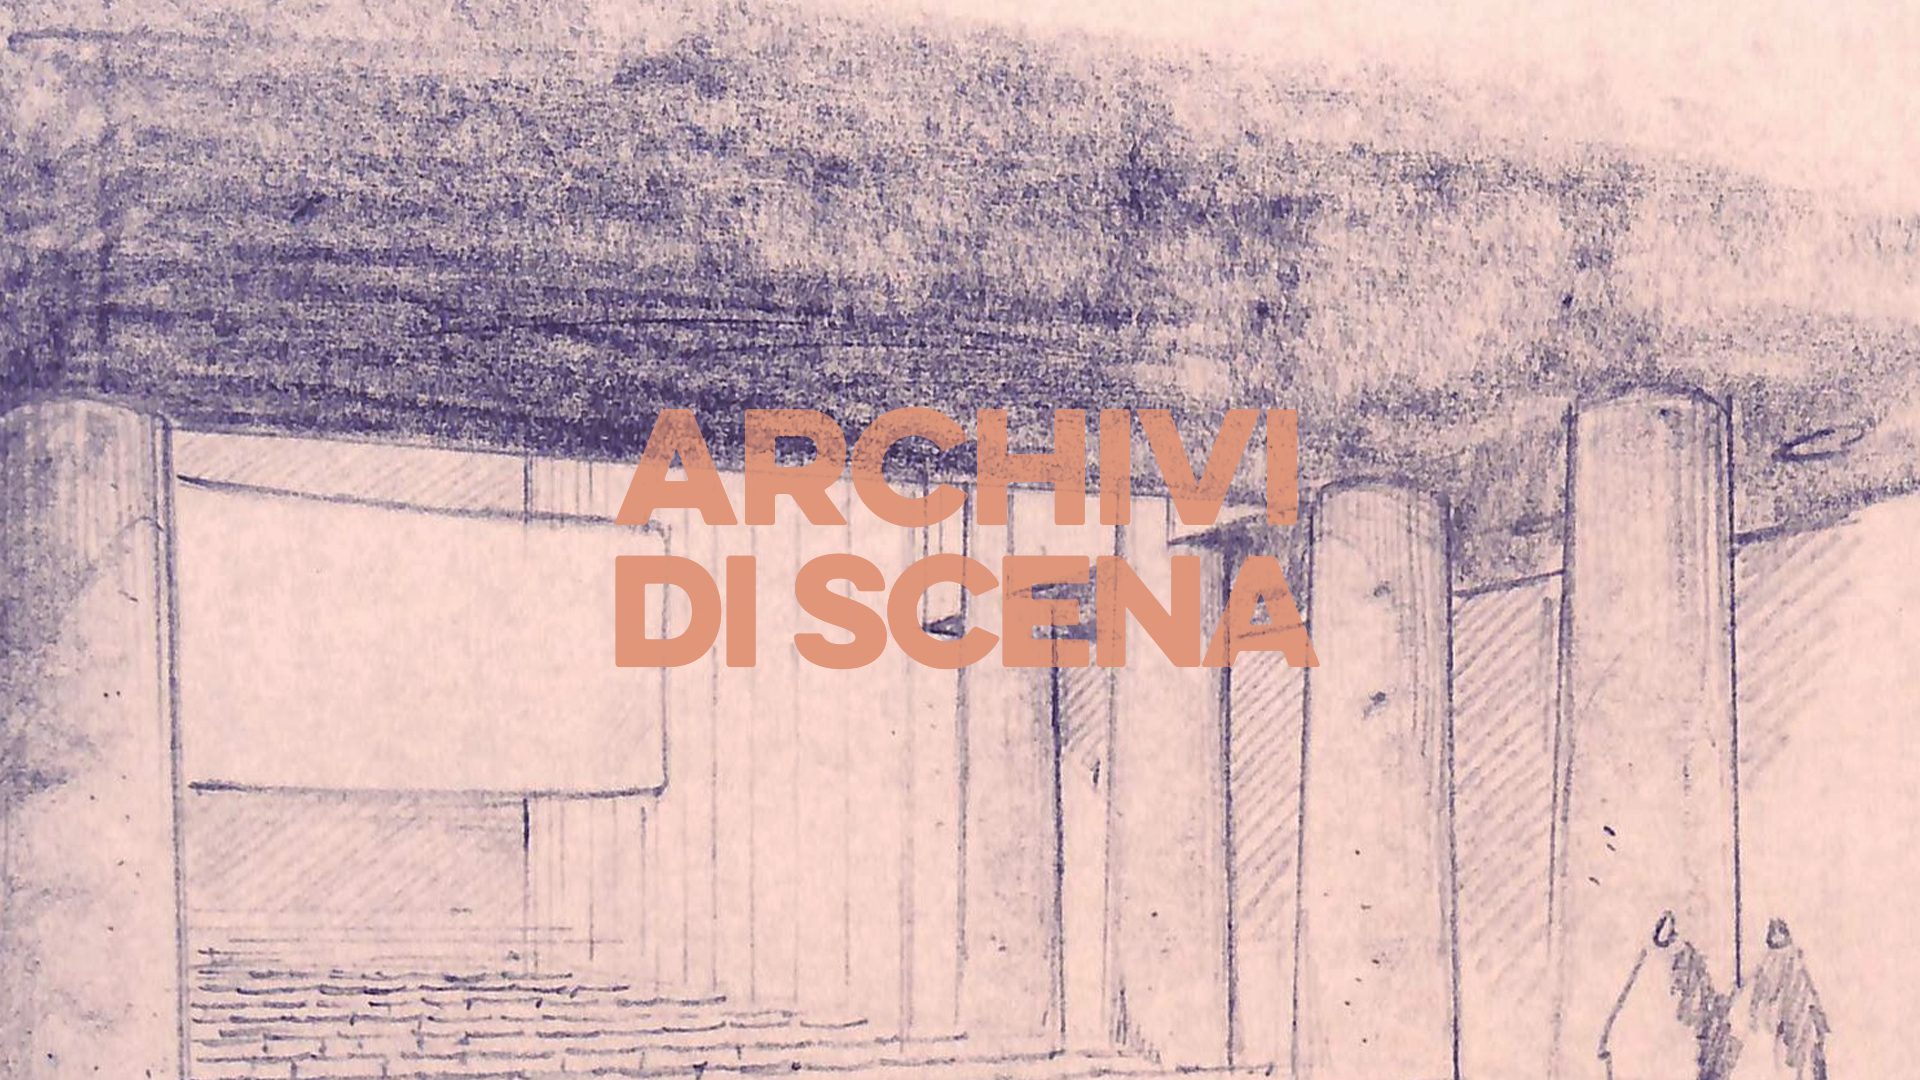 “Archivi di scena”, al via la campagna social delle DG Cinema e Audiovisivo, Spettacolo e Archivi del MiC